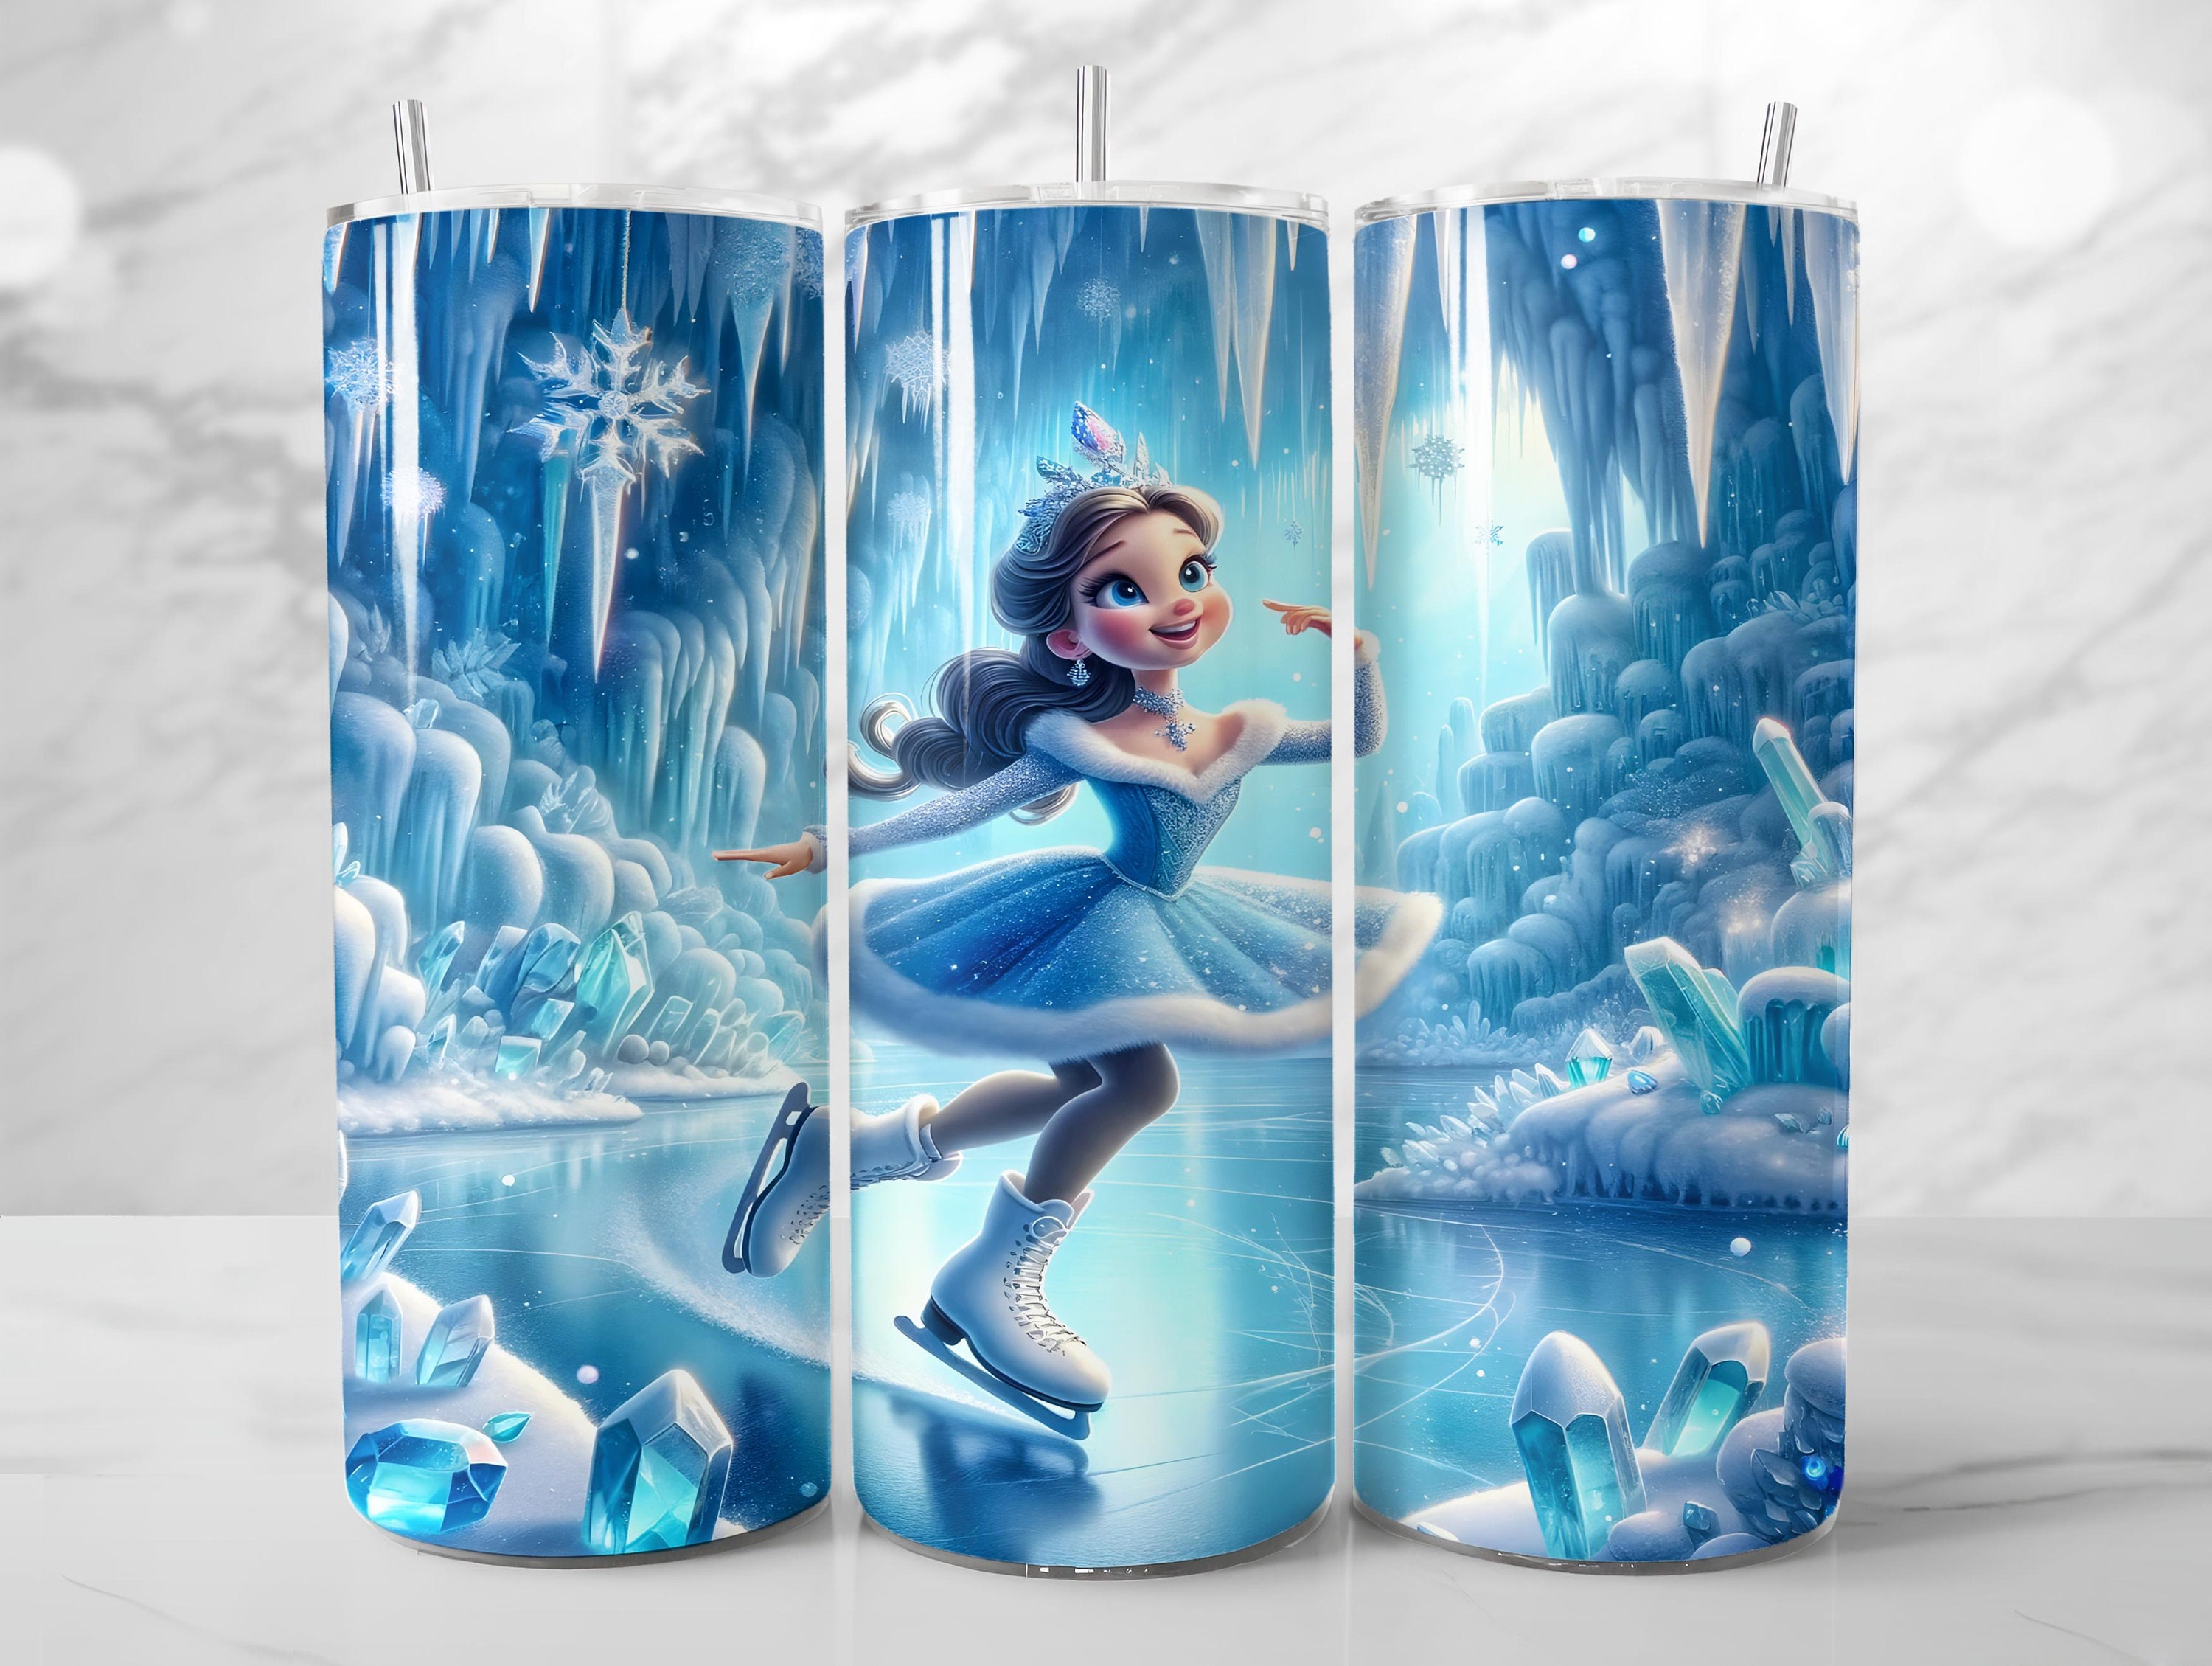 Elsa Crystals Frozen 2 Inspired Leggings in Capri or Full Length